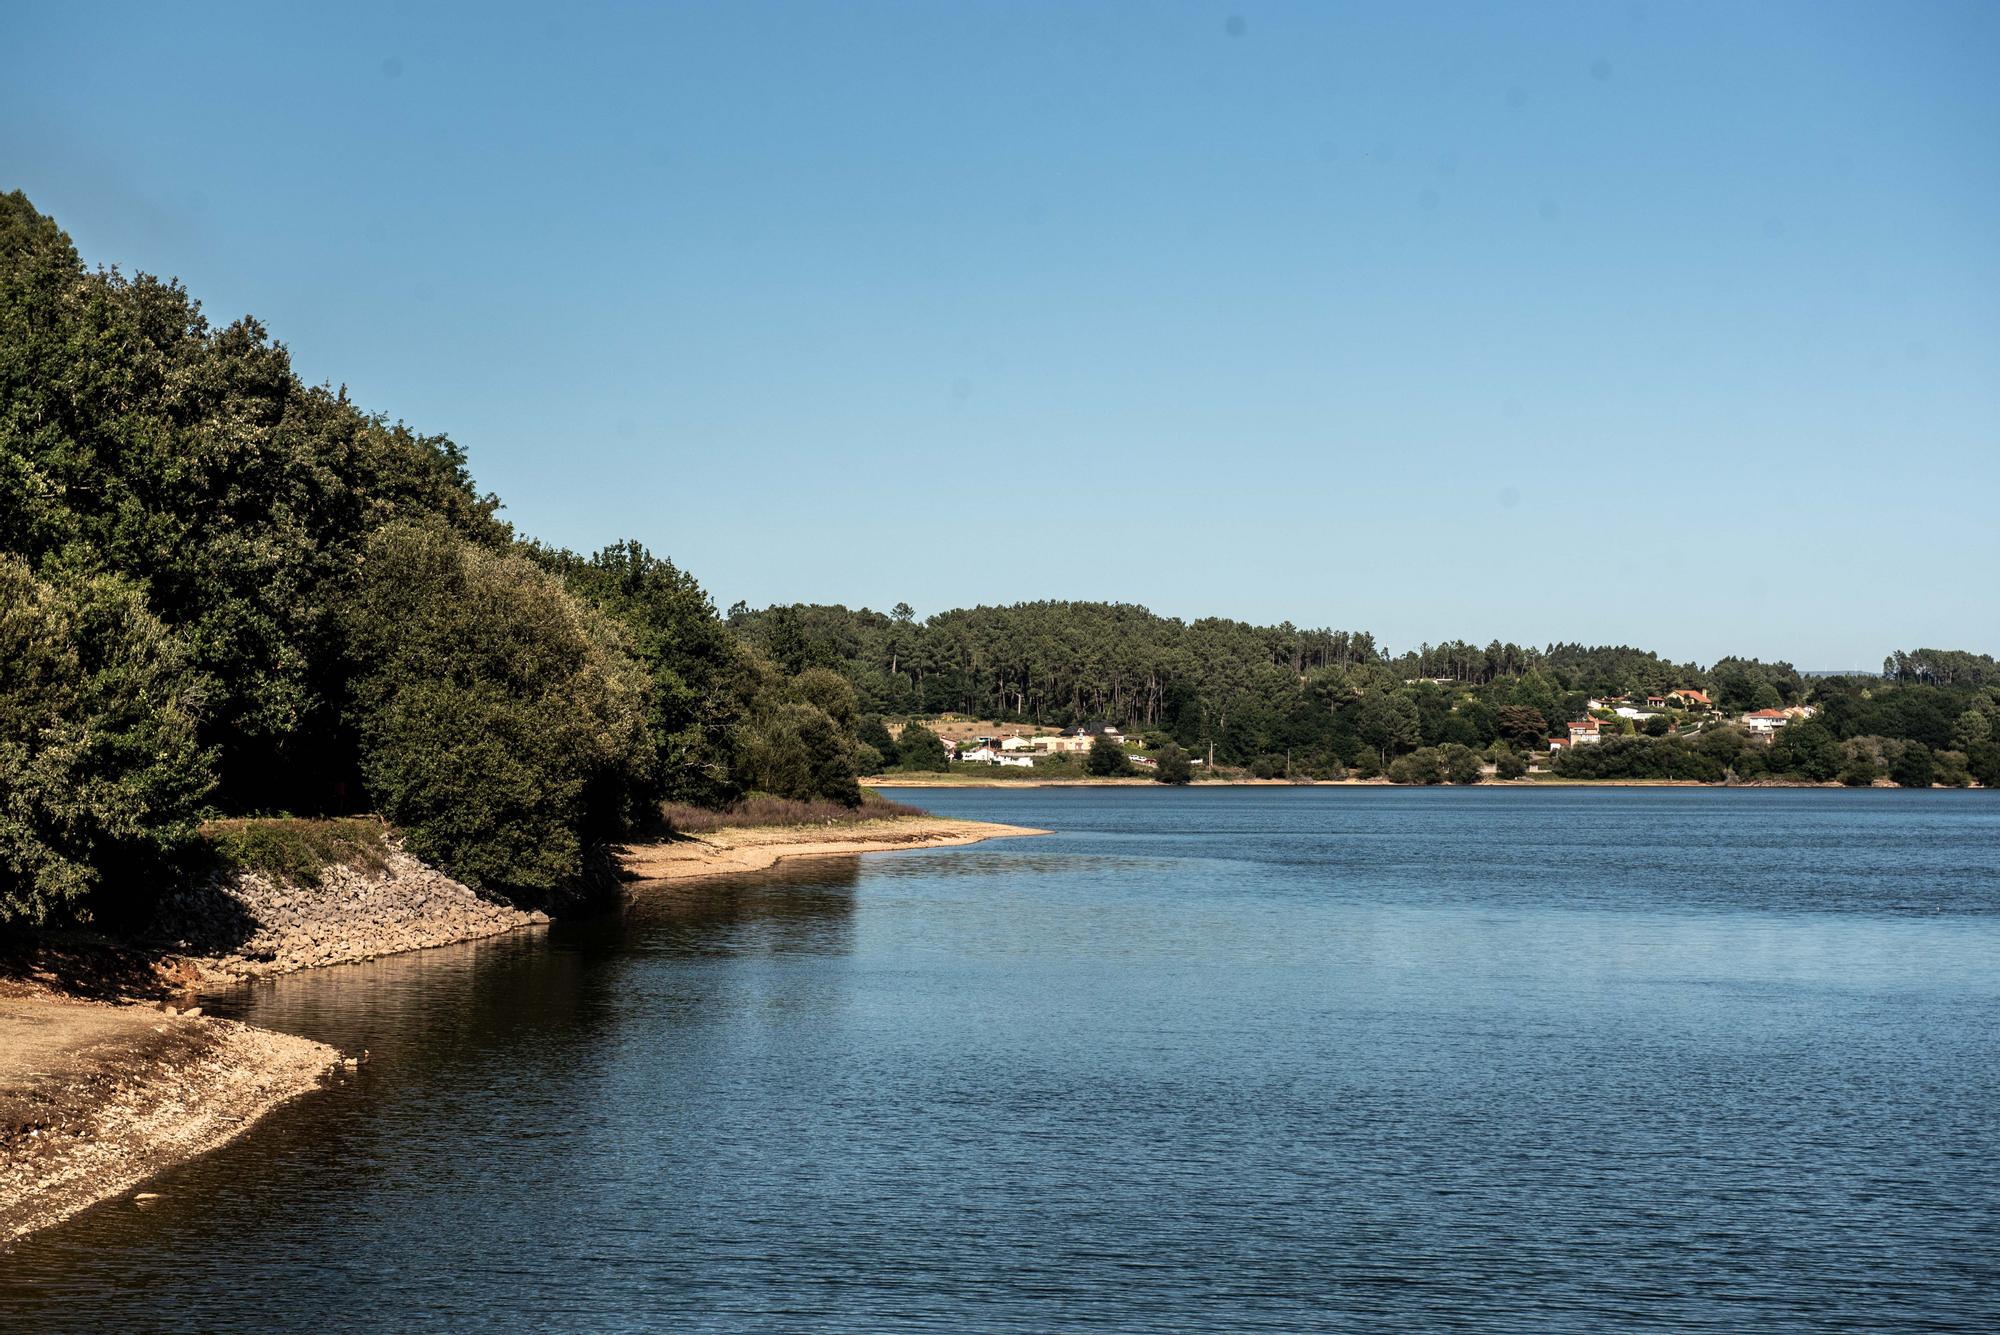 Activada la alerta de sequía prolongada en las cuencas de A Coruña, Arteixo y Betanzos